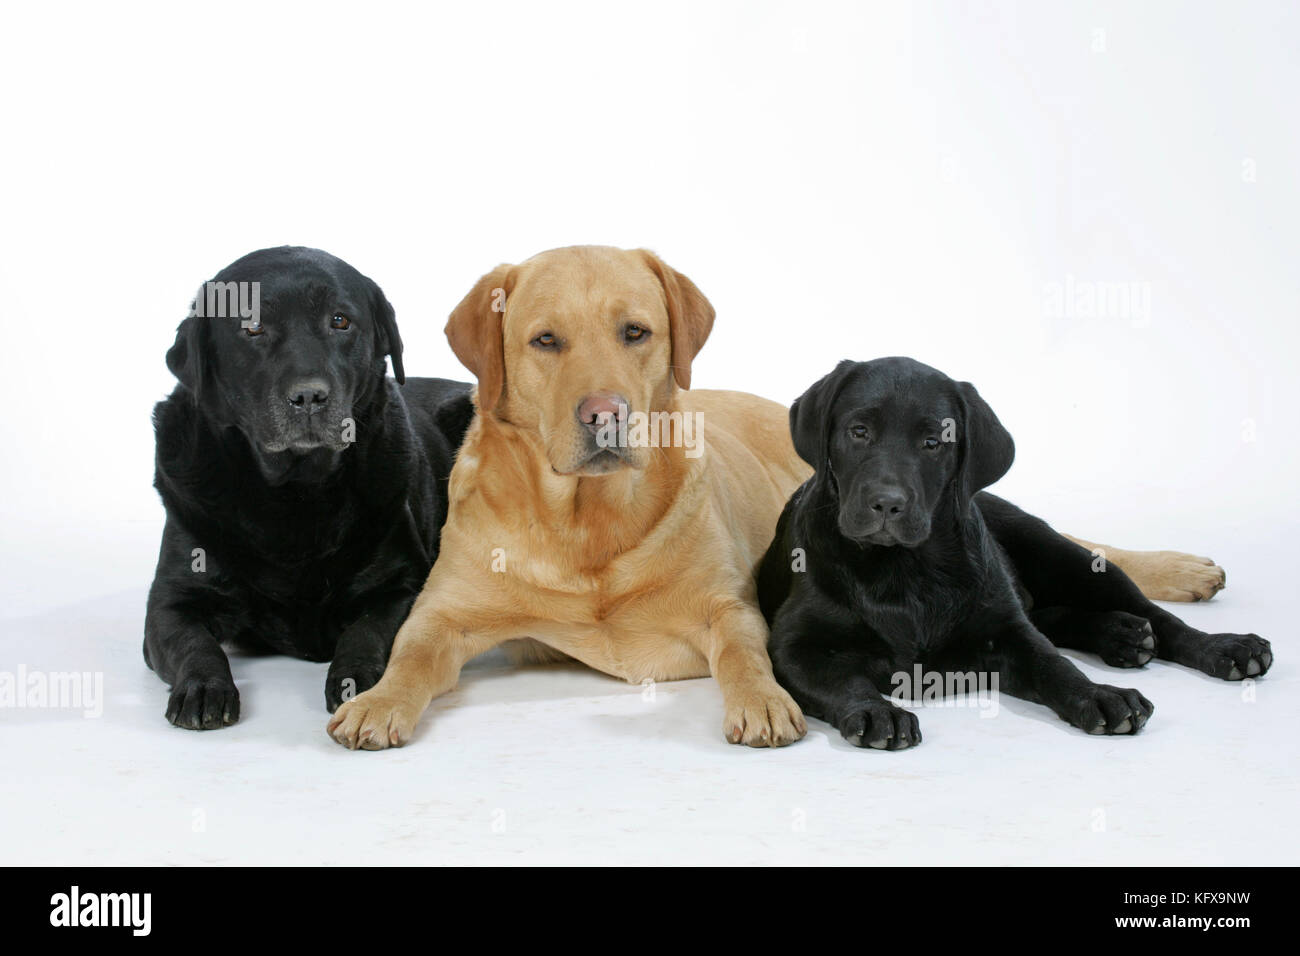 Chiens - Labradors noirs et jaunes avec chiot Labrador noir - couché. Banque D'Images